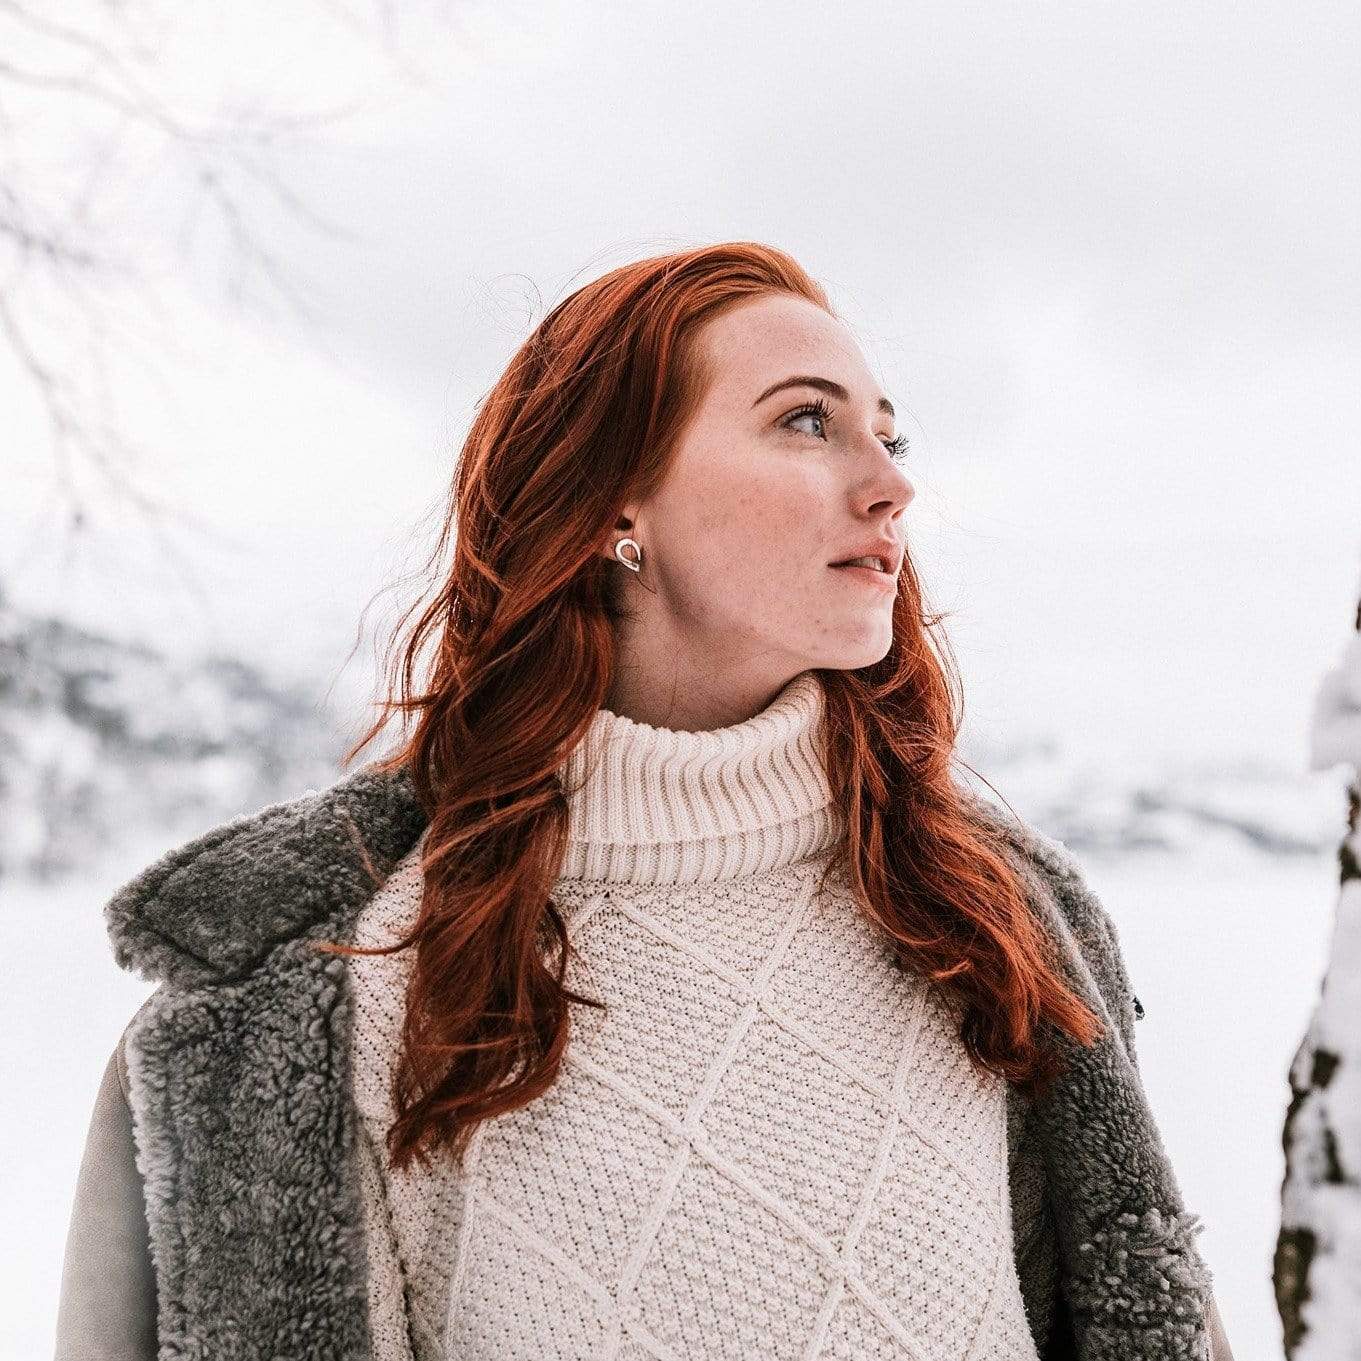 Handmade jewellery in the Norwegian winter environment